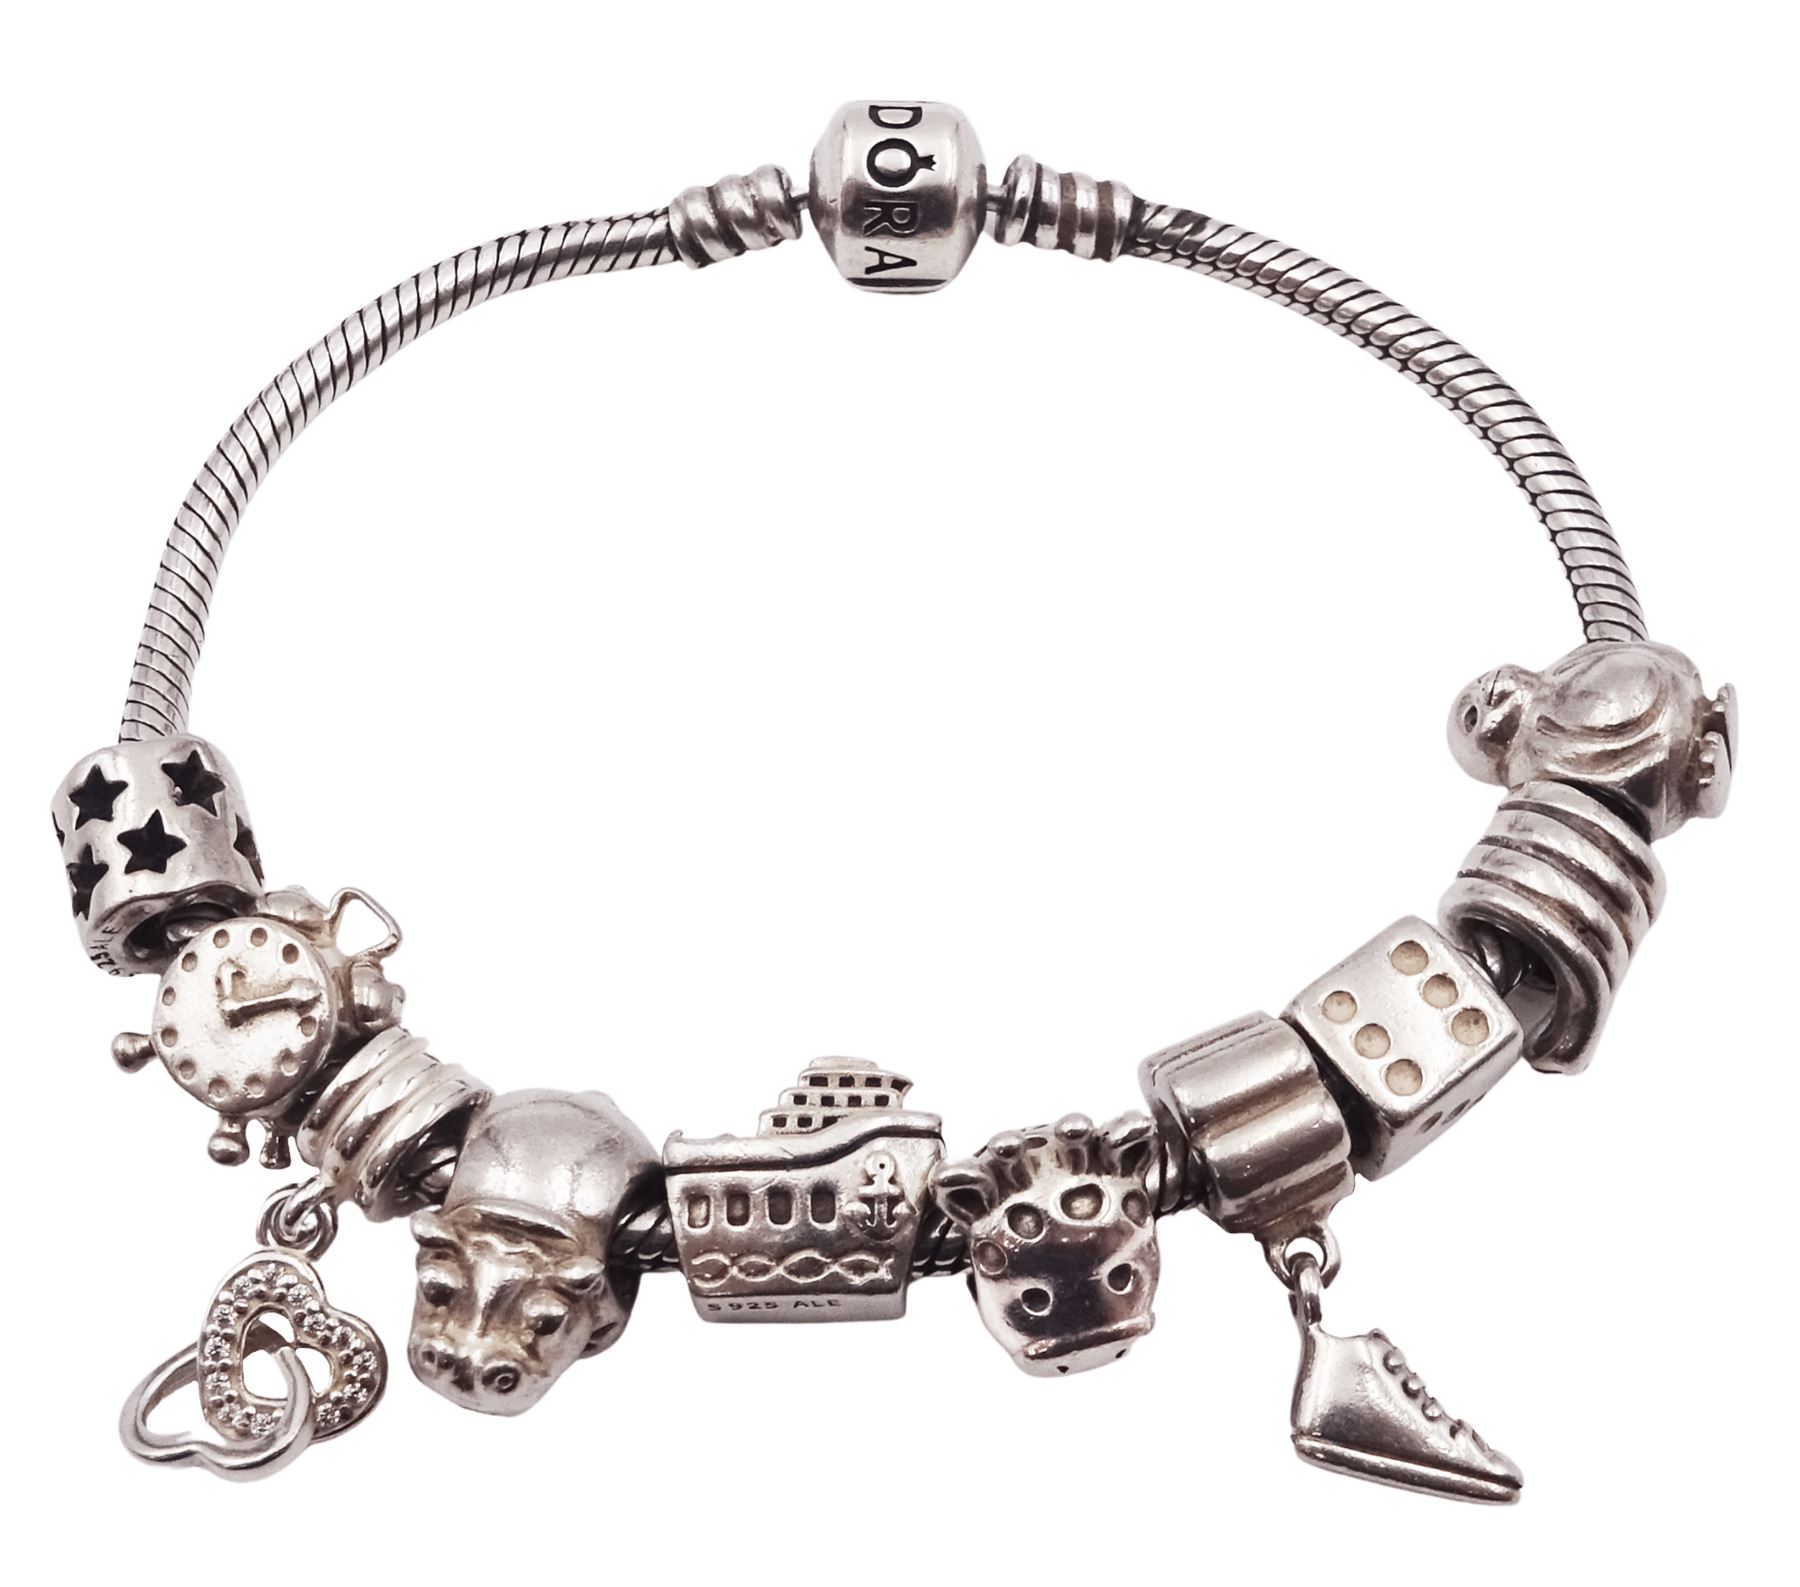 Pandora silver charm bracelet with ten Pandora silver charms